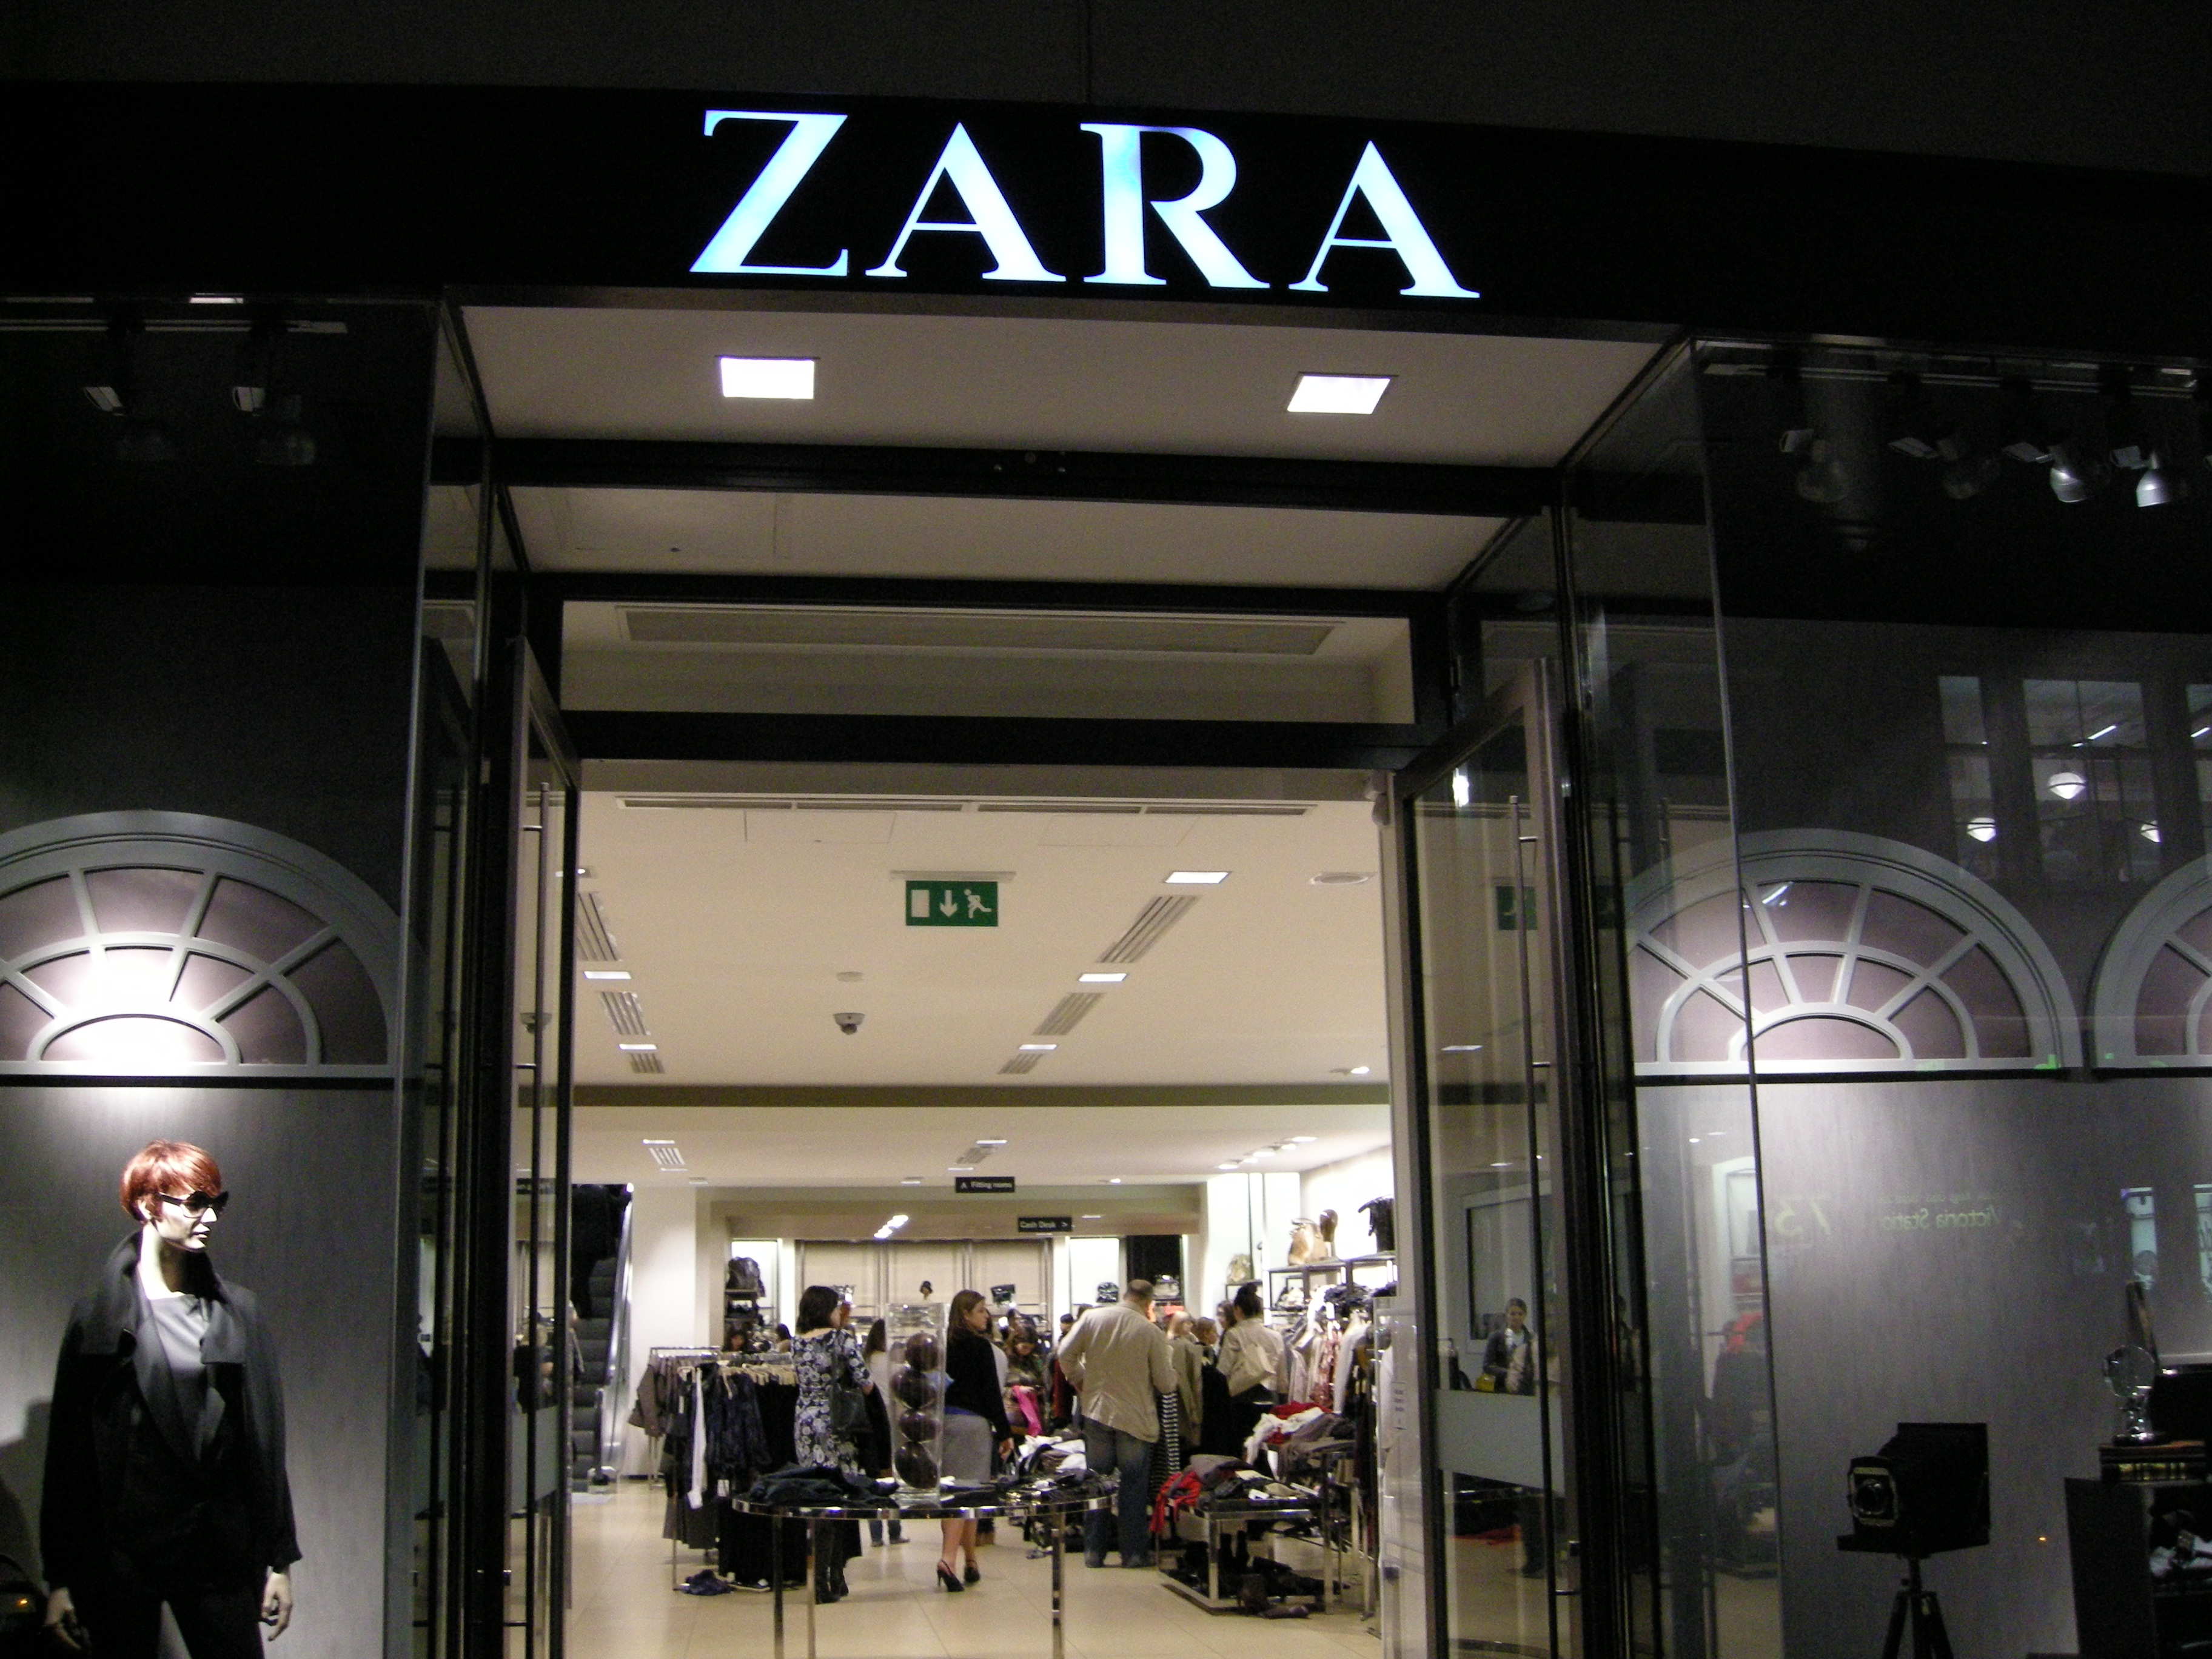 shop online zara españa